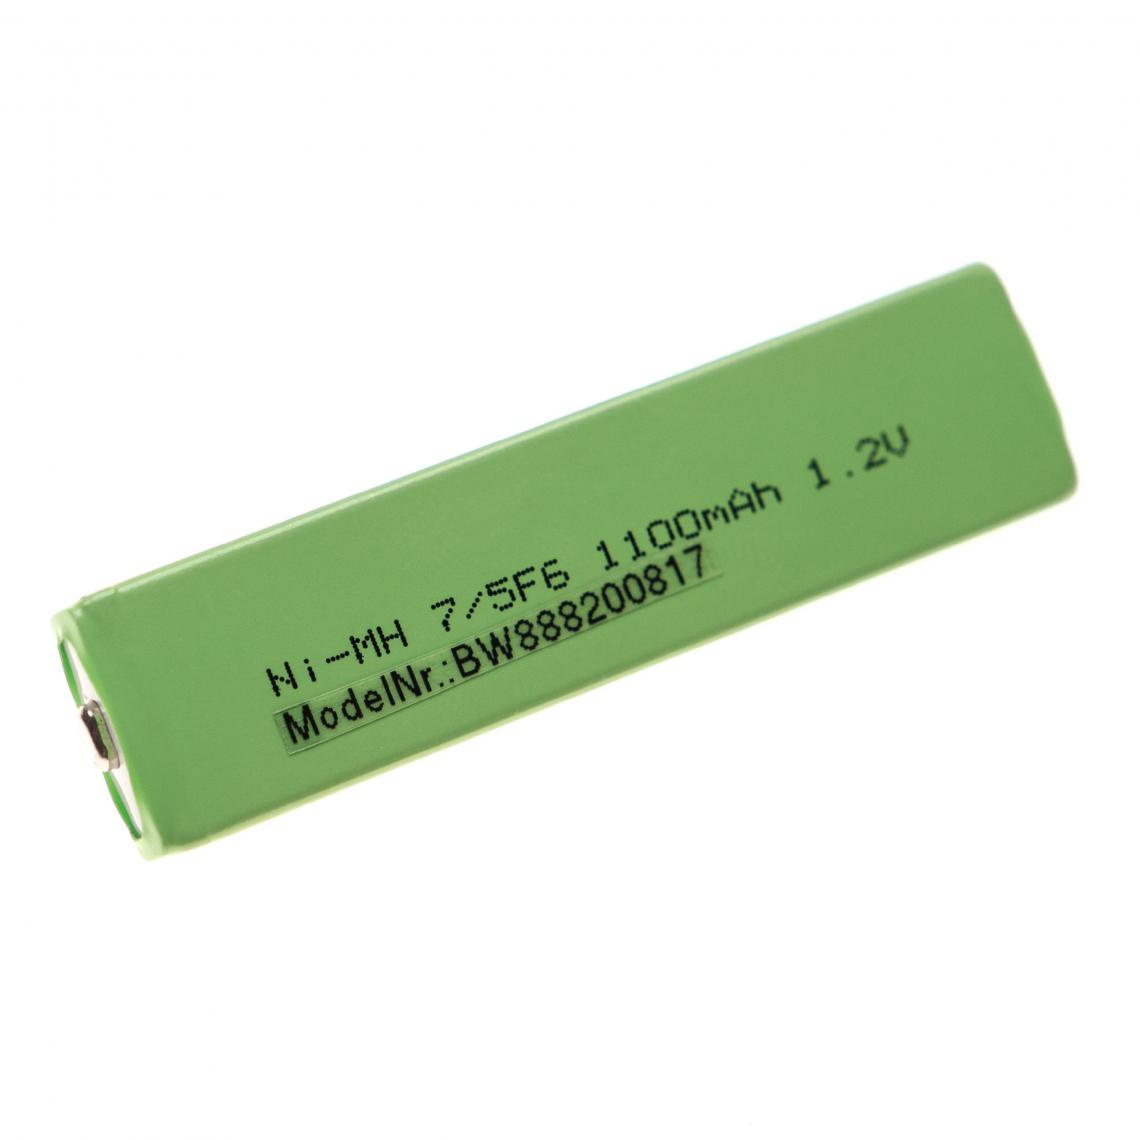 Vhbw - vhbw Cellules de batterie remplacement pour Vapex VTE 1450M pour baladeur, Minidisc (1100mAh, 1,2V, NiMH), bouton Top, 7/5F6 - Batteries électroniques